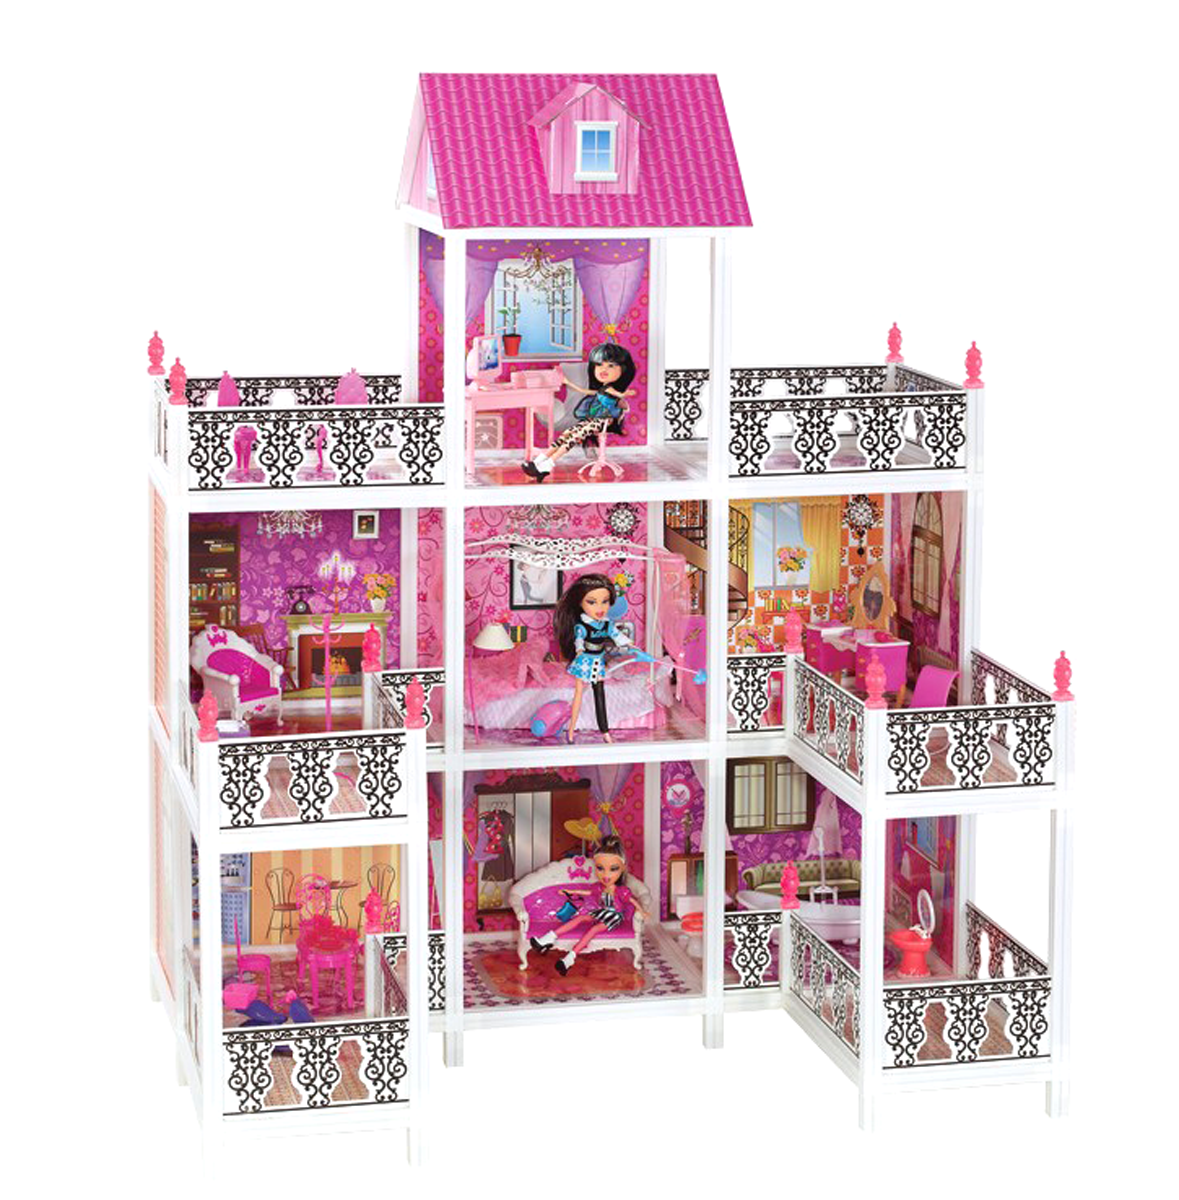 Paremo 3-этажный кукольный дом с 7 комнатами, мебелью и 3 куклами ppcd116-08